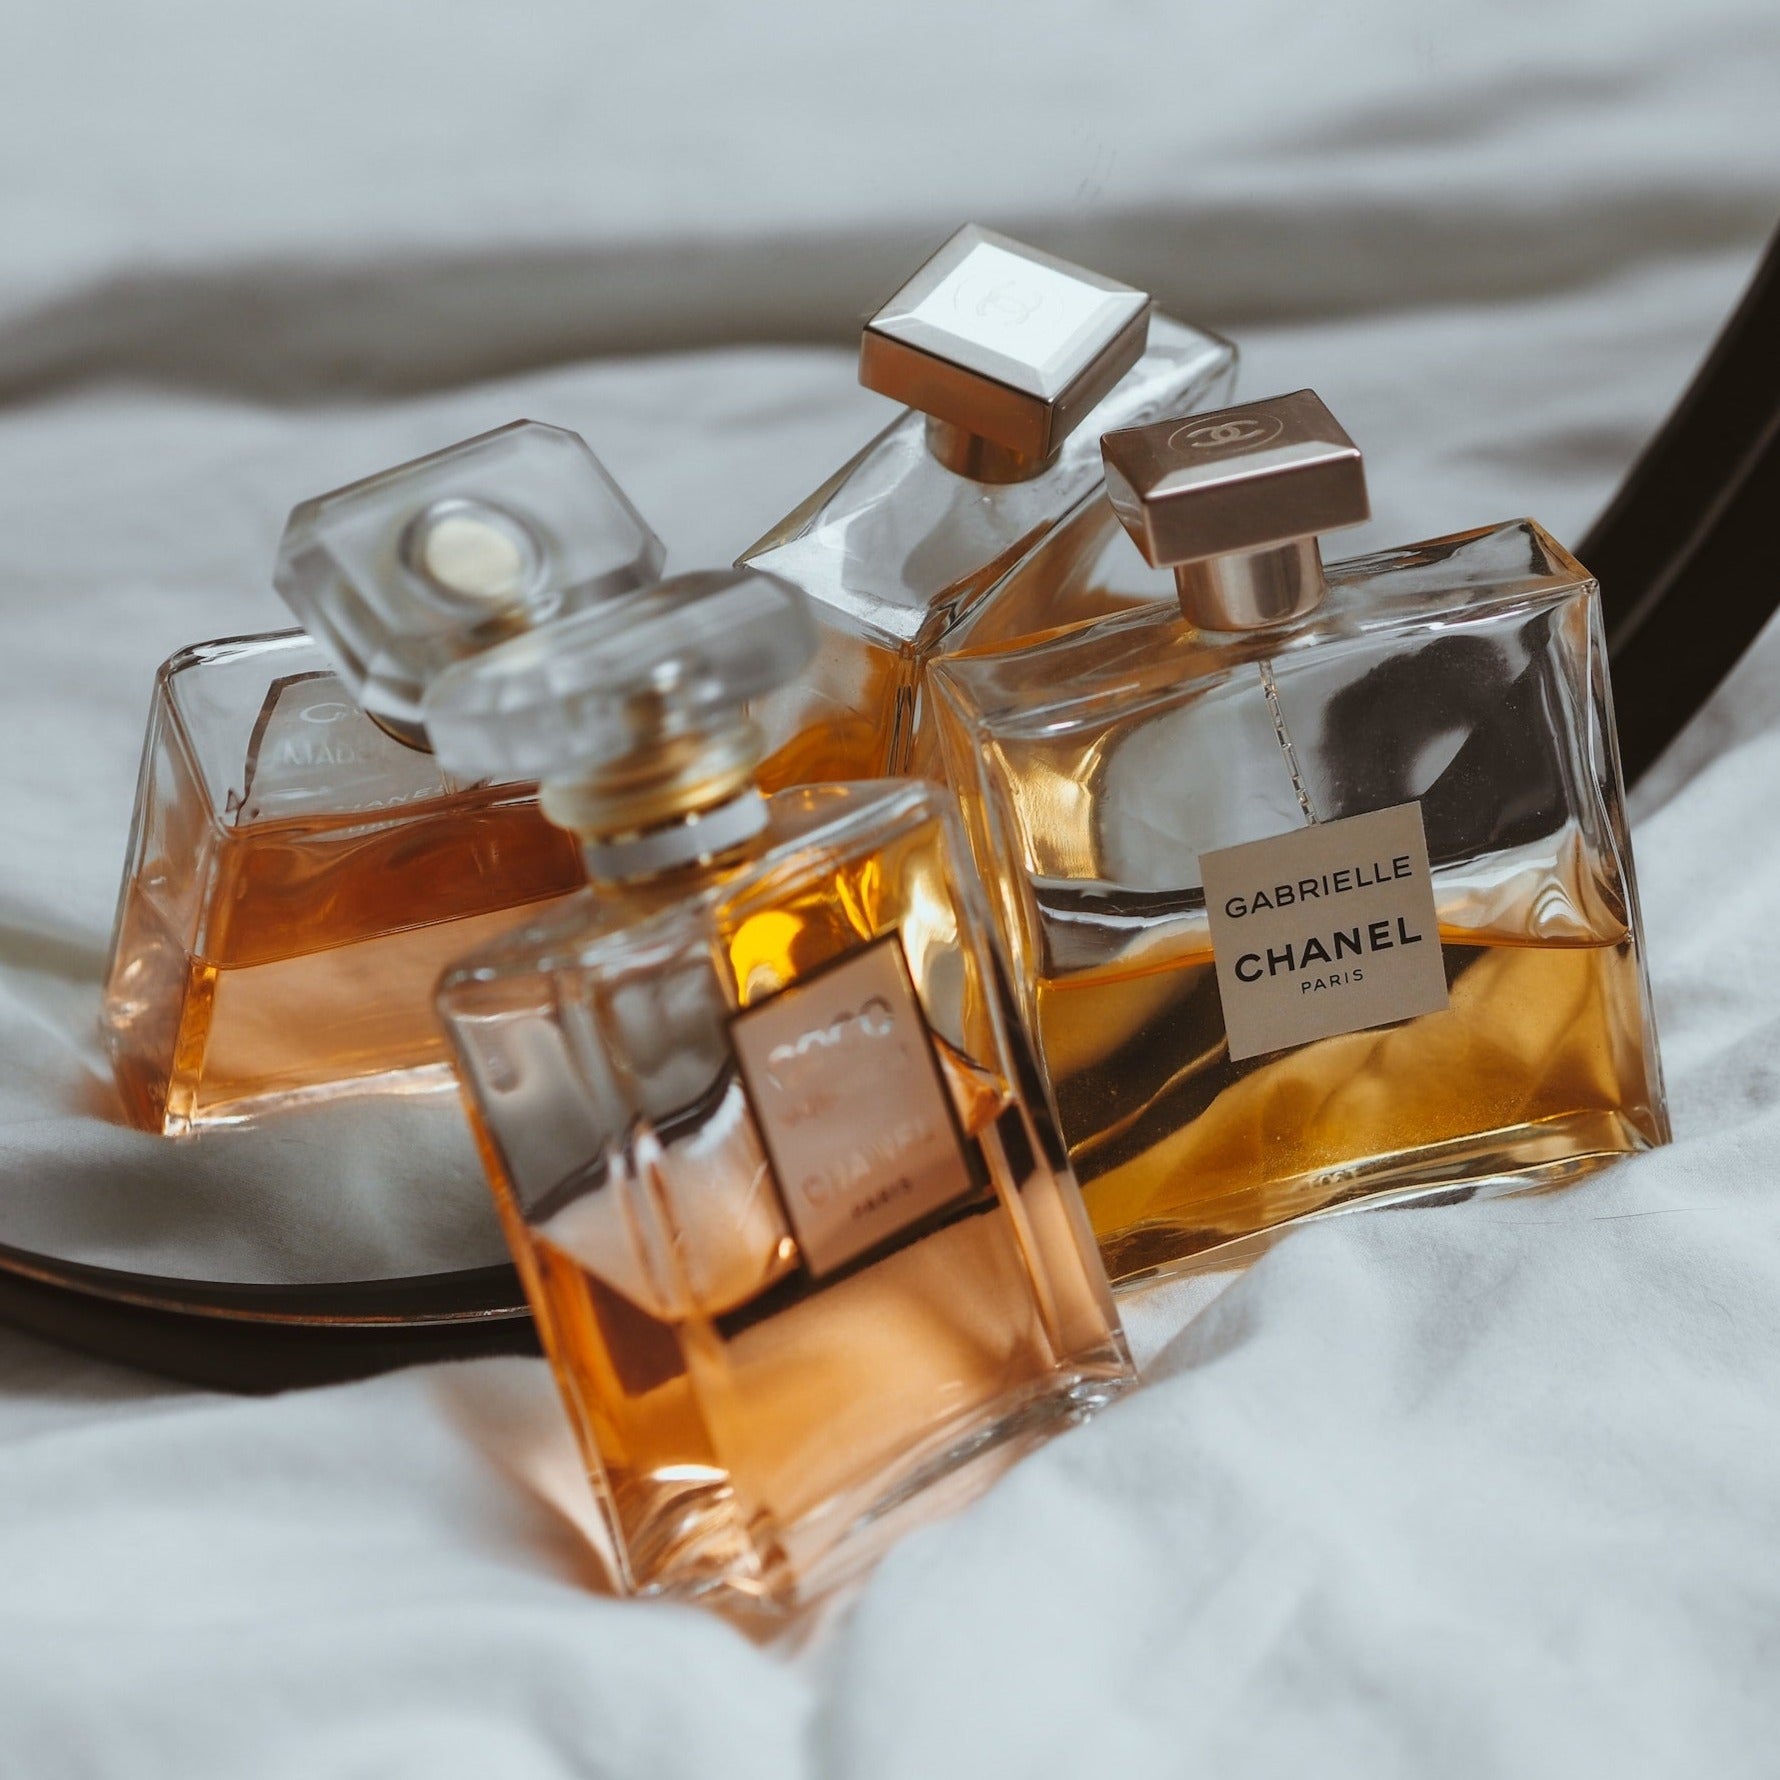 Chanel Gabrielle Parfum Hair Mist | My Perfume Shop Australia